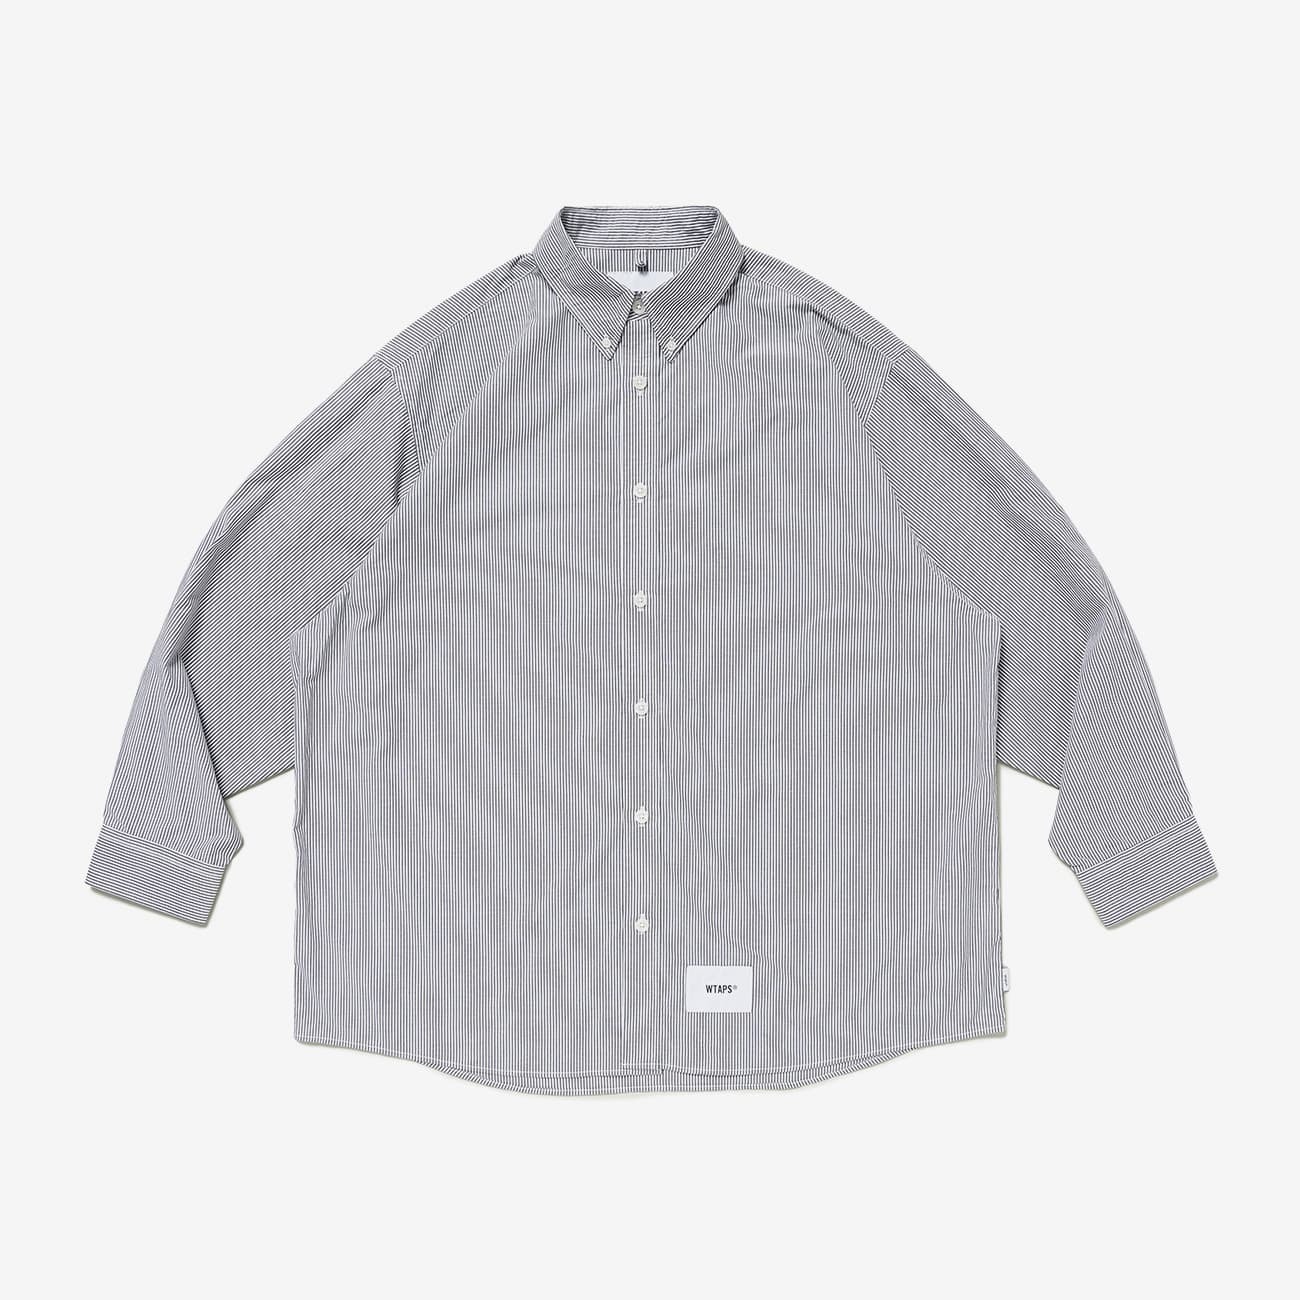 Wtaps Saxe shirt size 02